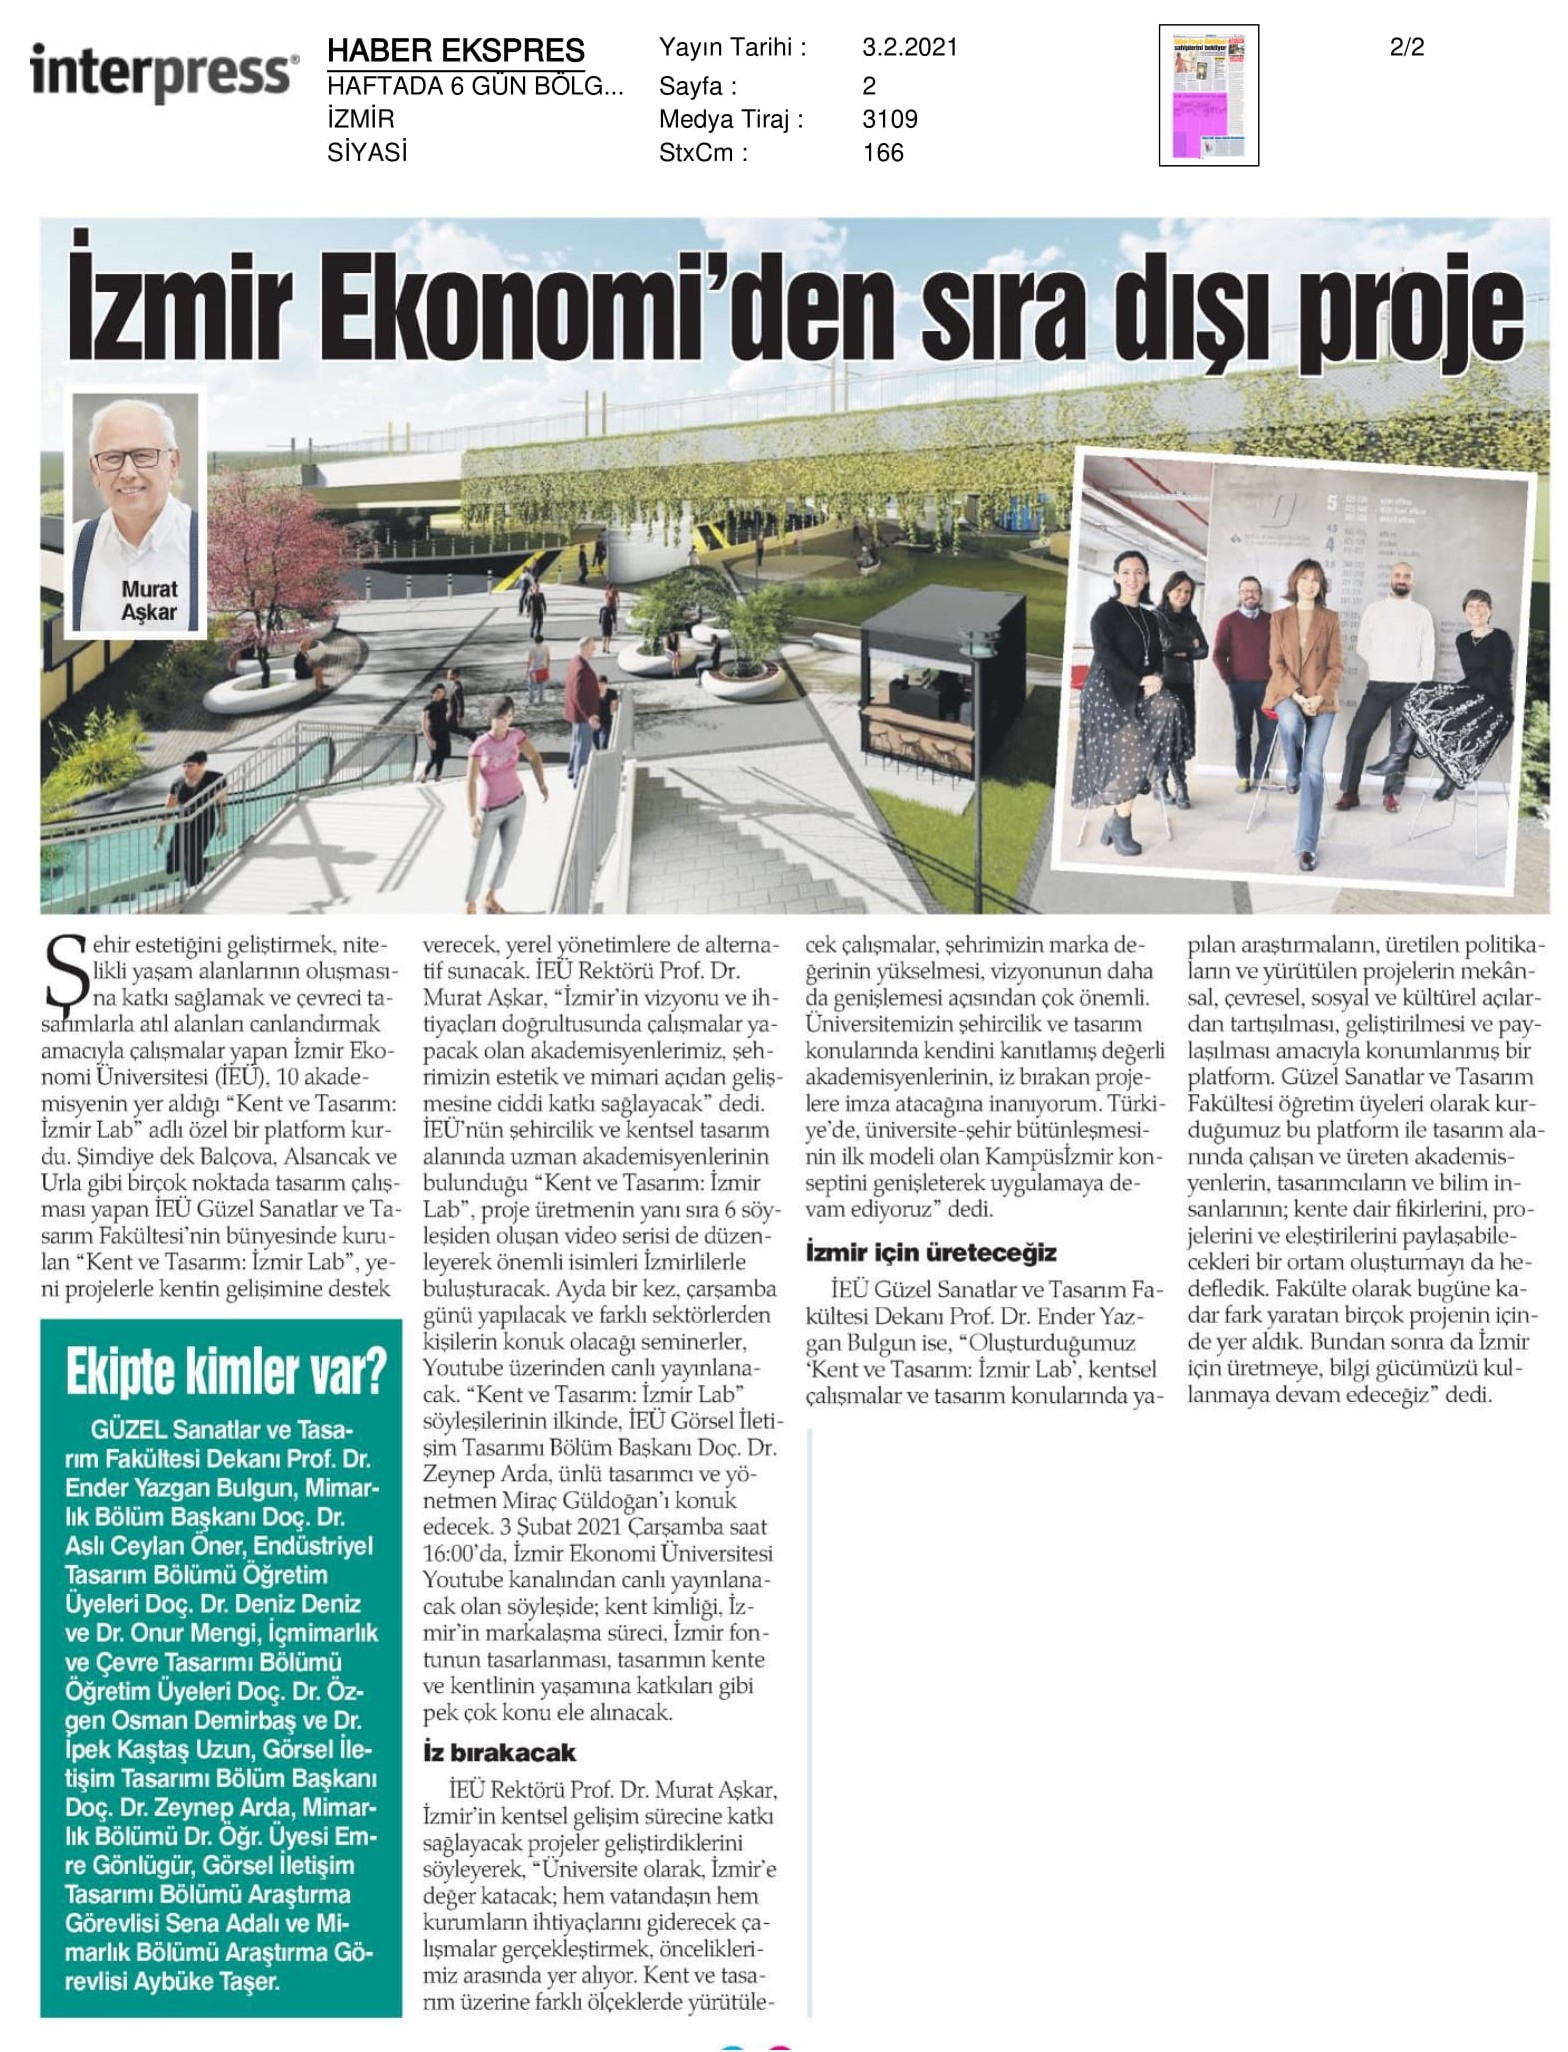 Tasarım ve estetik için ‘Kent ve Tasarım: İzmir Lab’